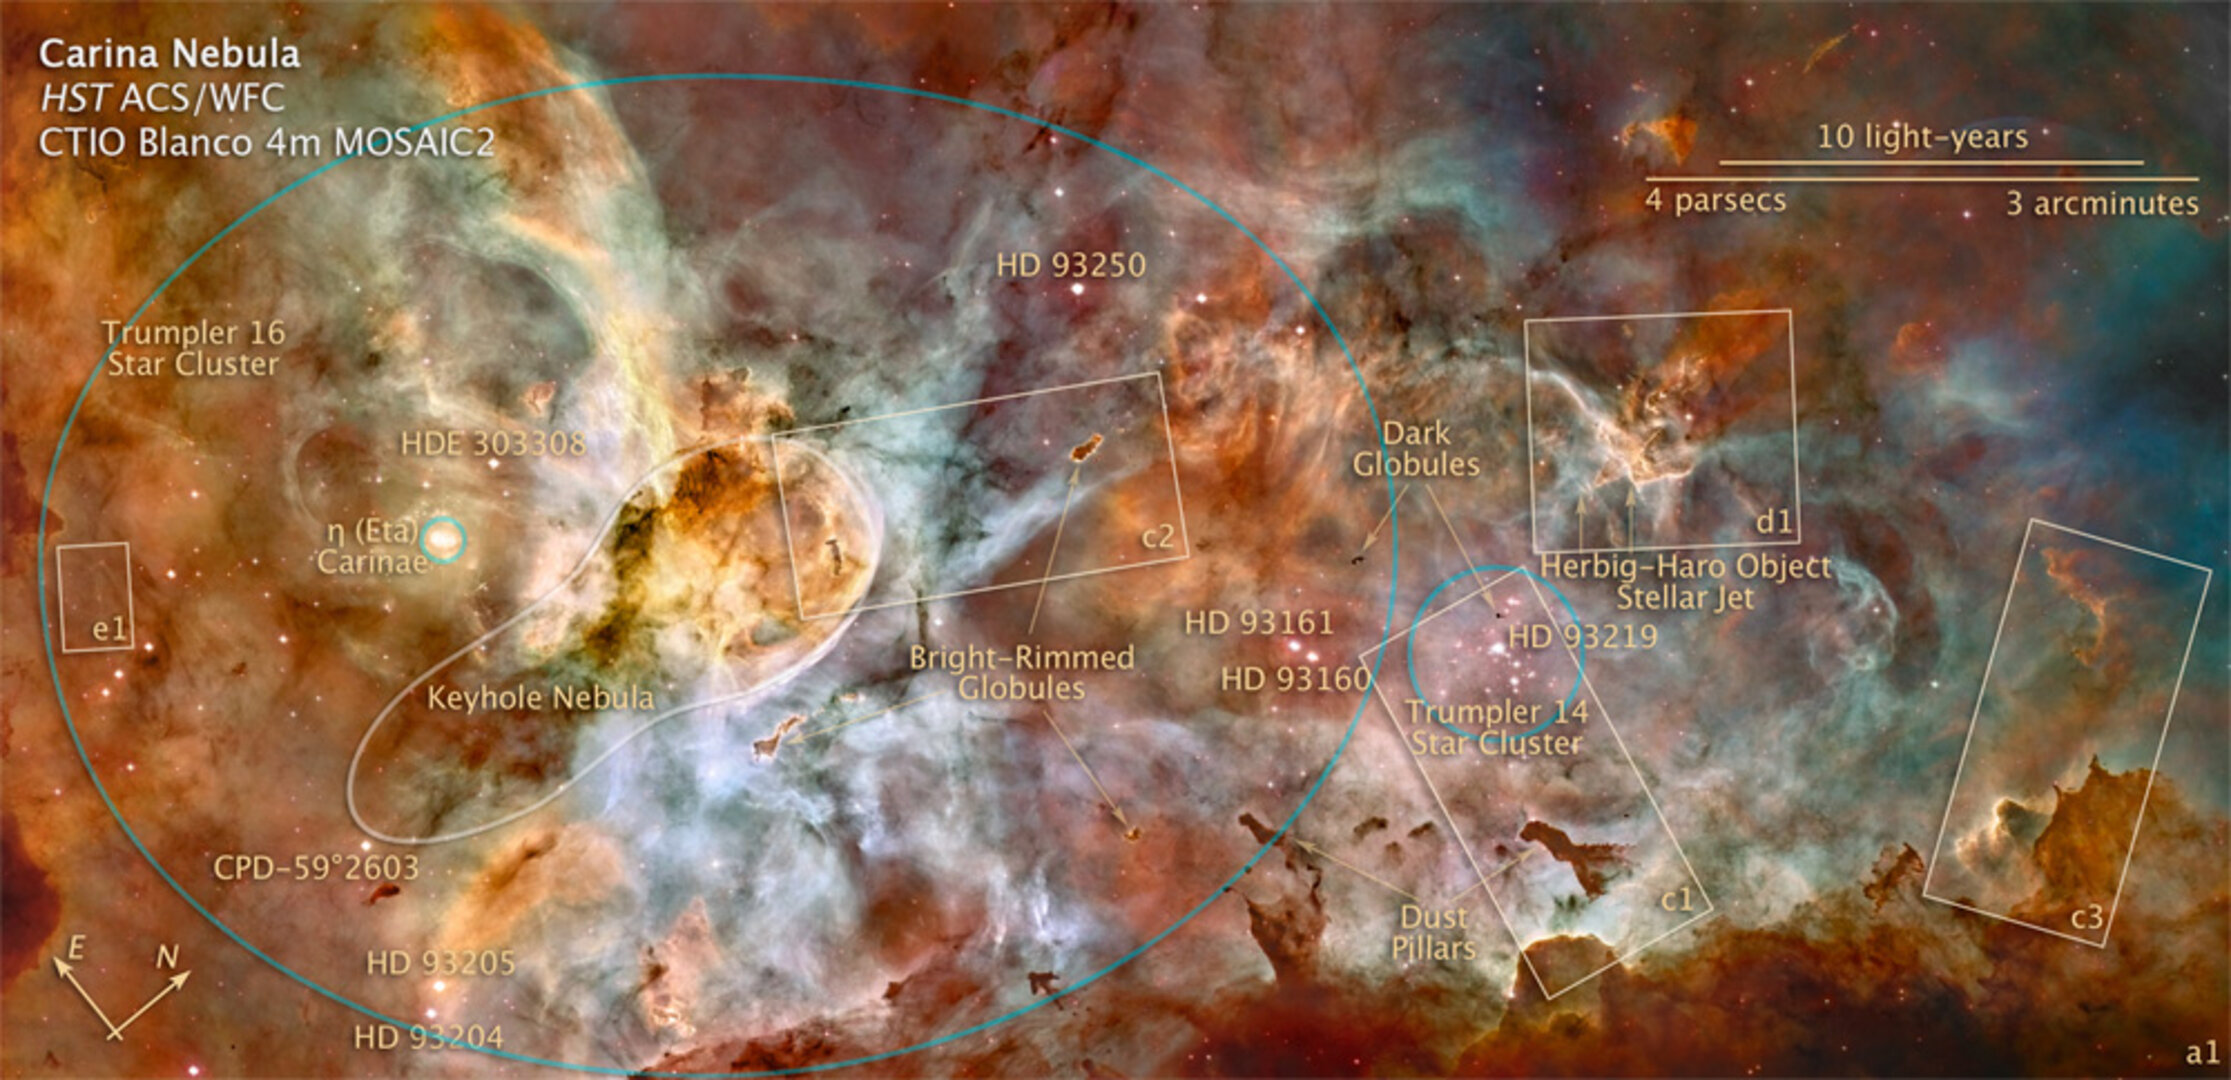 Carina Nebula, Hubble image